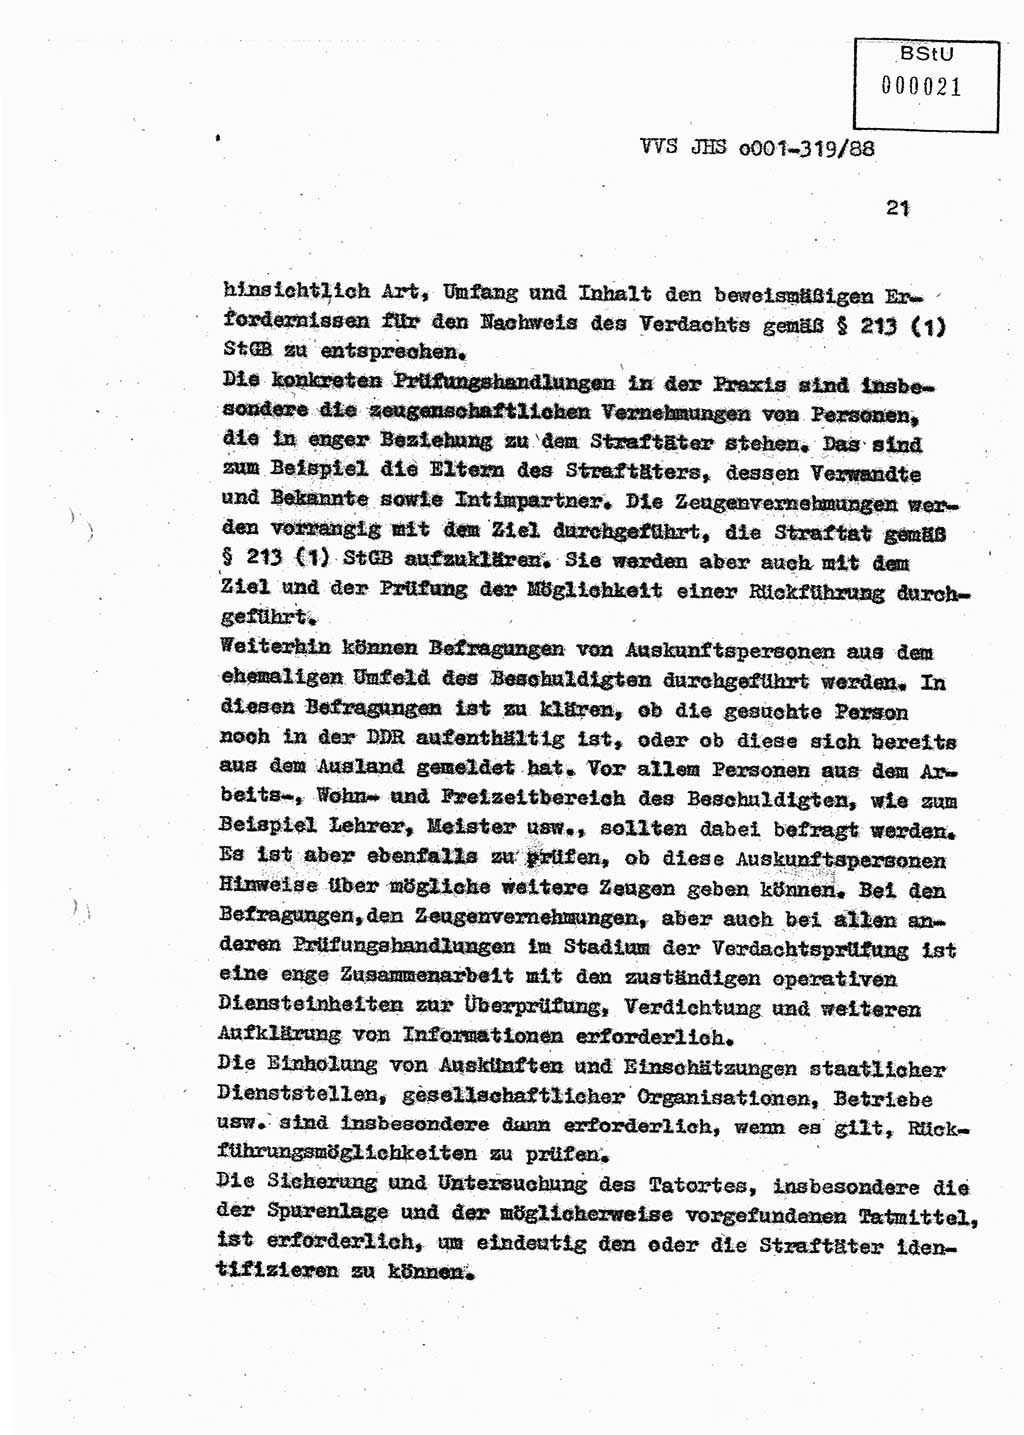 Diplomarbeit Offiziersschüler Holger Zirnstein (HA Ⅸ/9), Ministerium für Staatssicherheit (MfS) [Deutsche Demokratische Republik (DDR)], Juristische Hochschule (JHS), Vertrauliche Verschlußsache (VVS) o001-319/88, Potsdam 1988, Blatt 21 (Dipl.-Arb. MfS DDR JHS VVS o001-319/88 1988, Bl. 21)